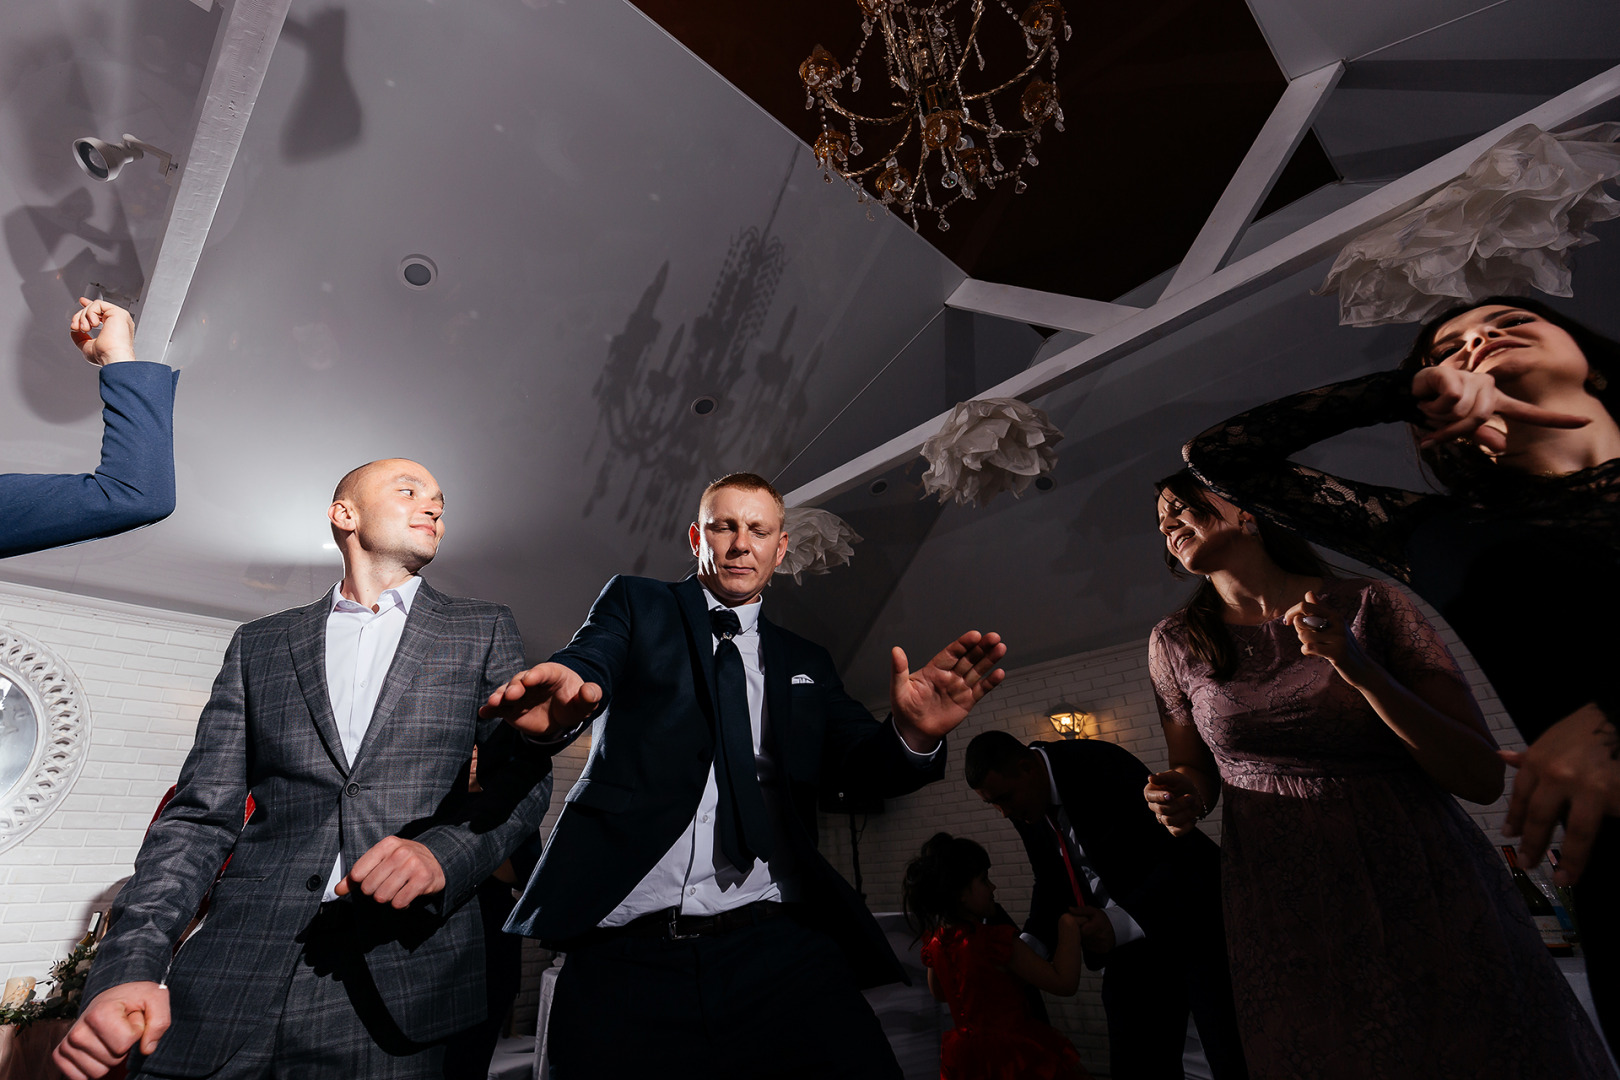 Анна Ликтаравичене - свадебный фотограф, семейный фотограф, фотограф беременных в городе Минск, Березино, Мядель, фотография от 12.03.2021